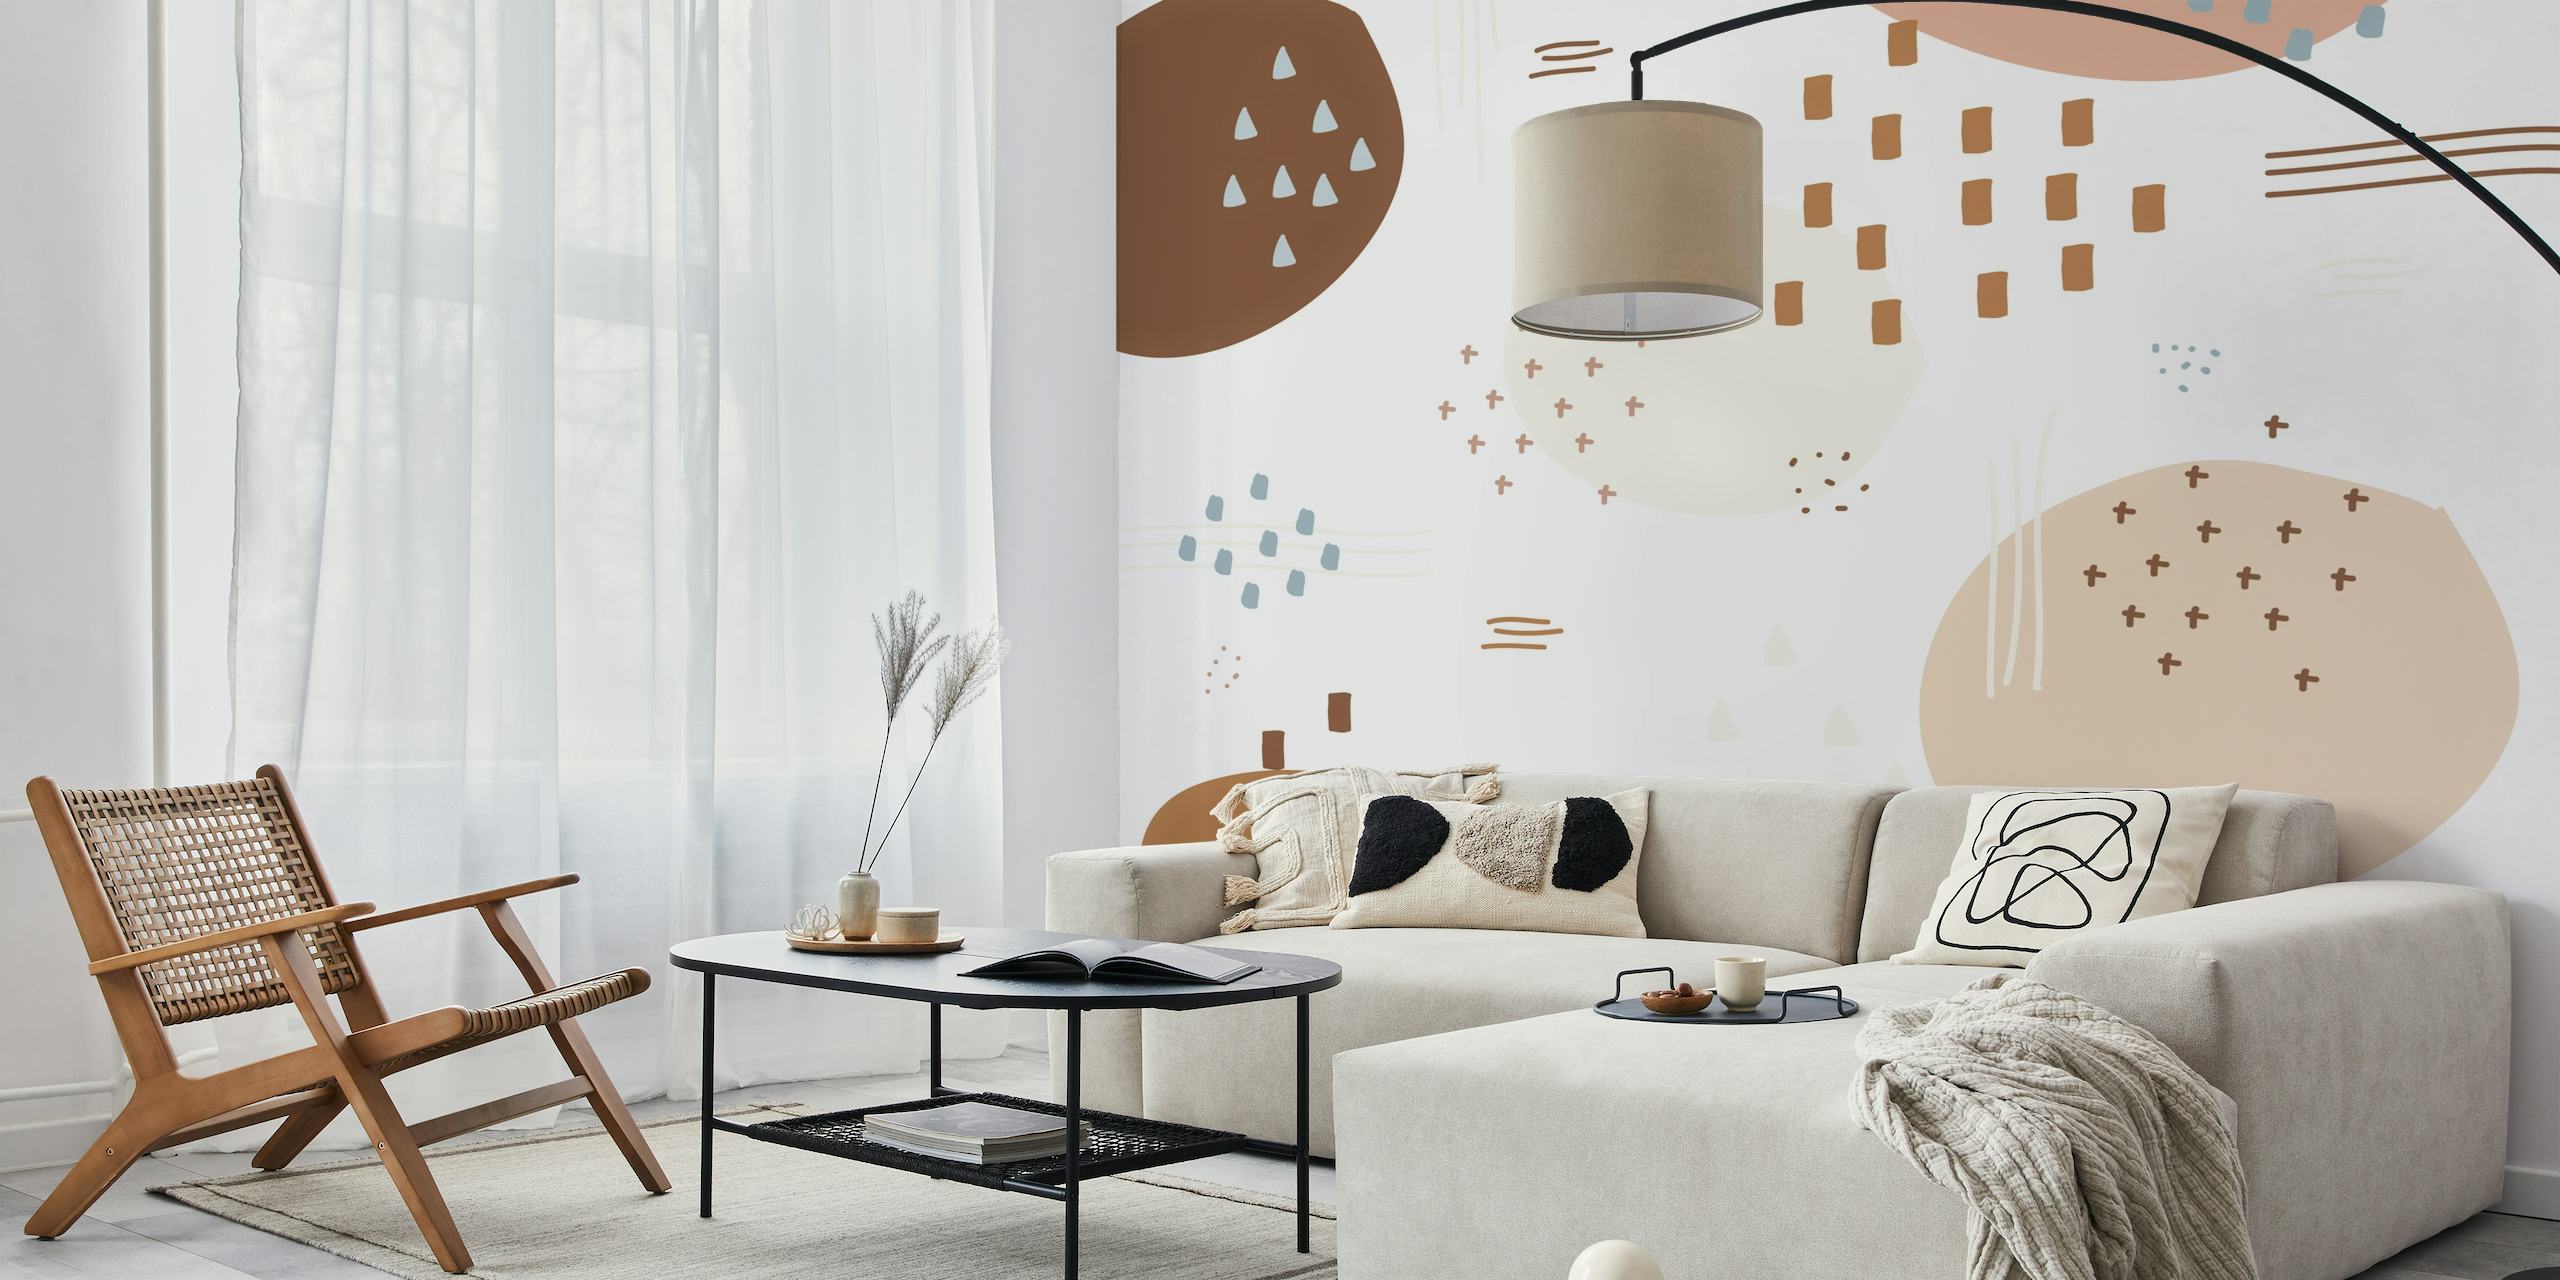 Moderna apstraktna smeđa i bež zidna slika s minimalističkim dizajnom